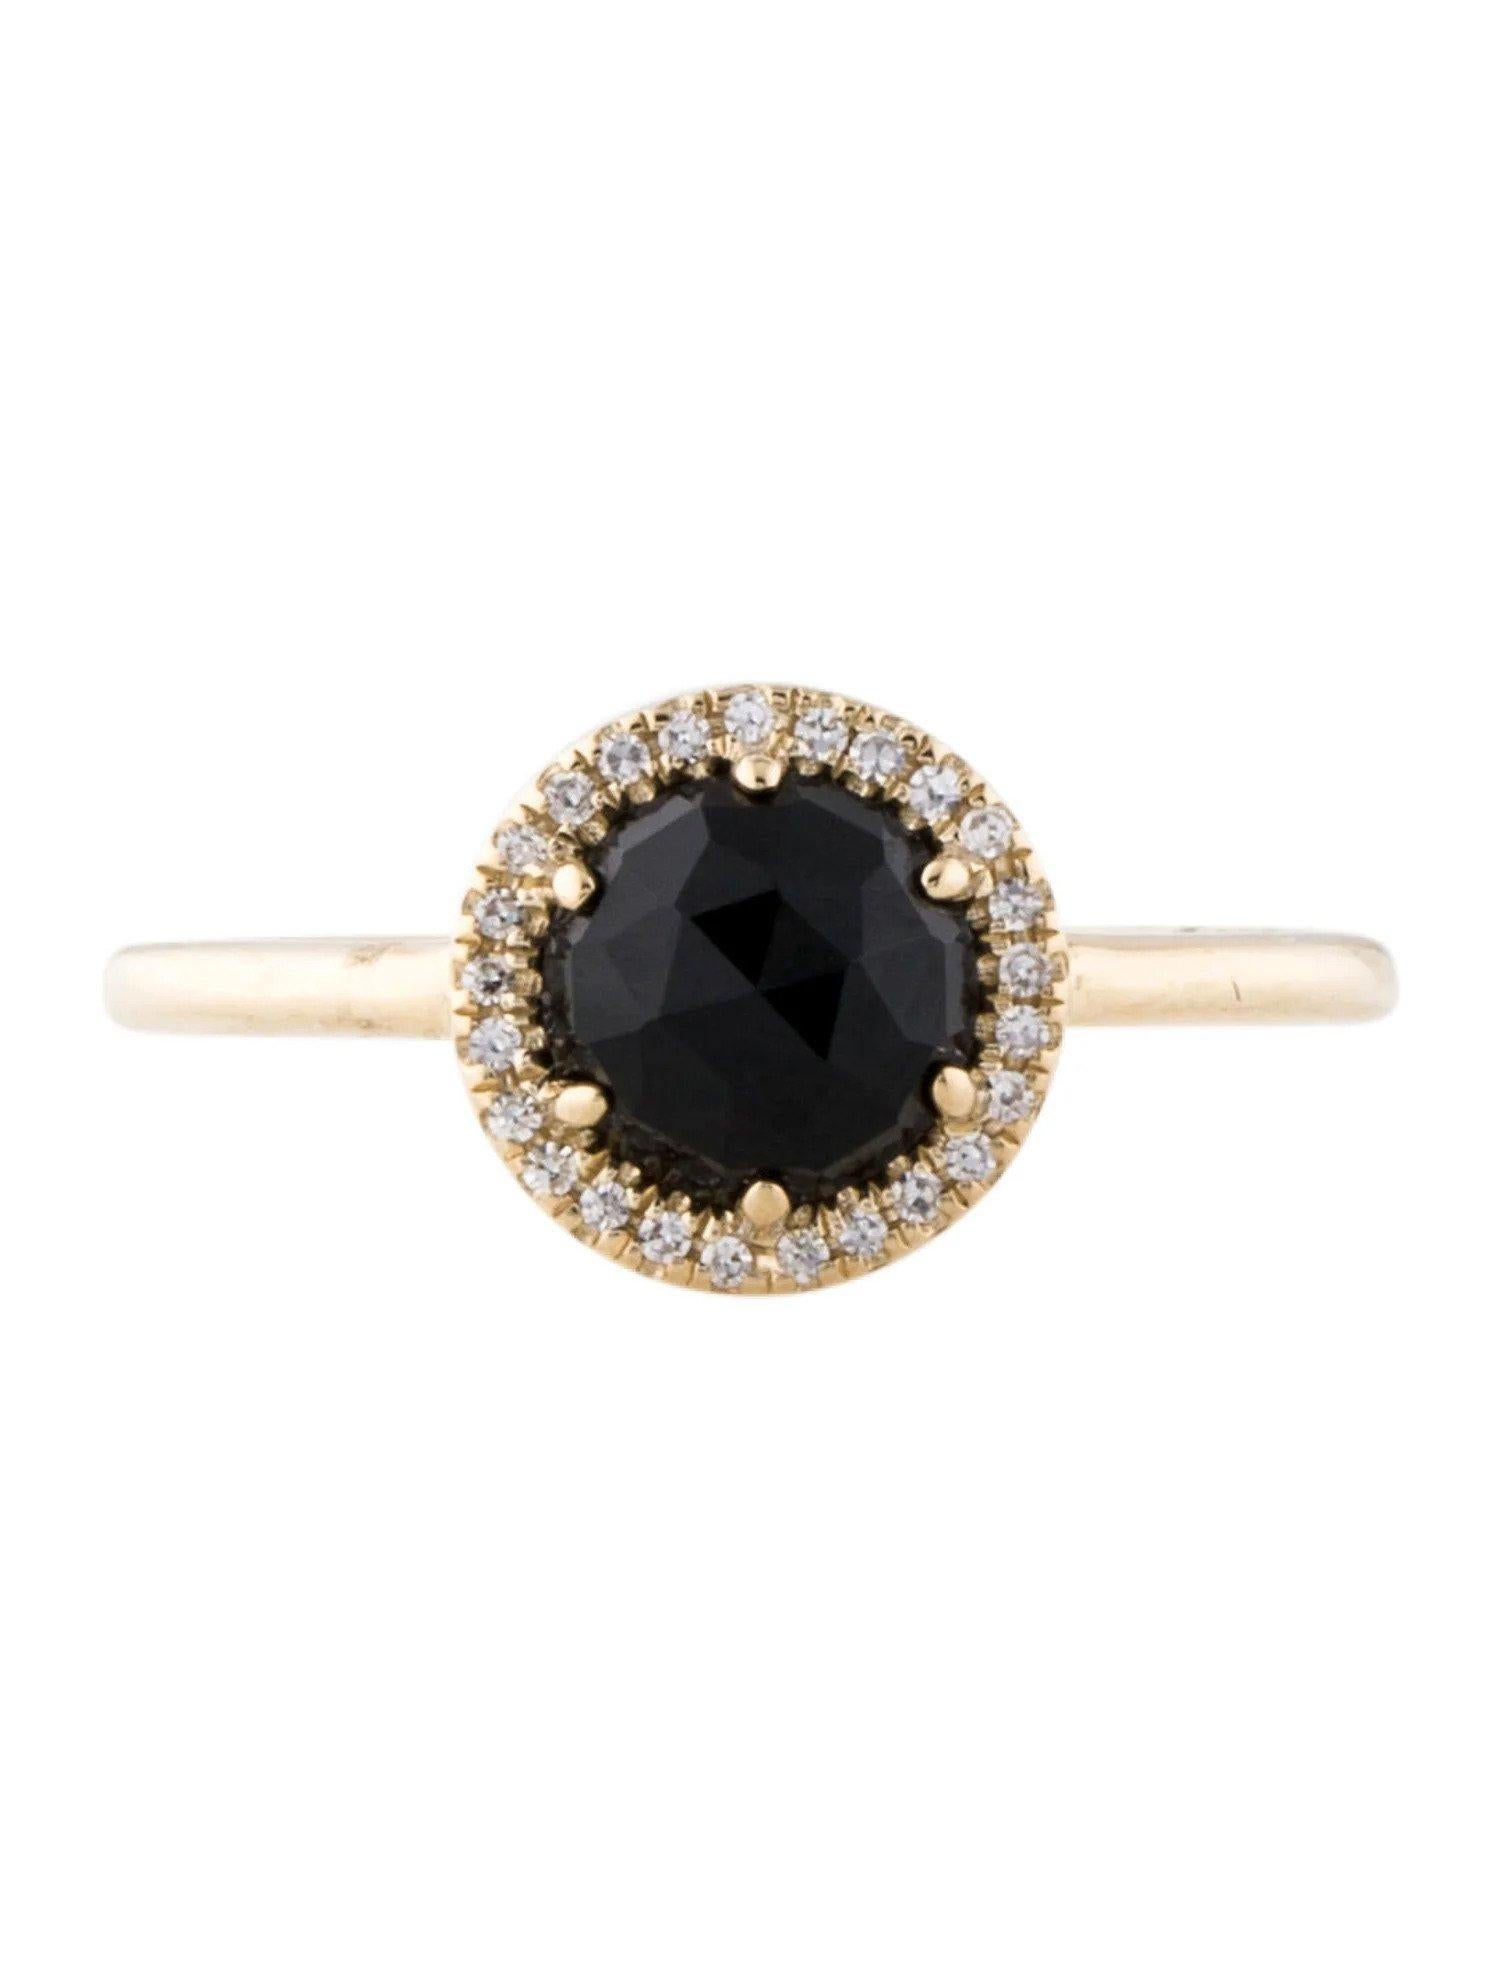 Dieser Ring aus schwarzem Onyx und Diamanten ist ein atemberaubendes und zeitloses Accessoire, das jedem Outfit einen Hauch von Glamour und Raffinesse verleihen kann. 

Dieser Ring besteht aus einem 1,09 Karat schweren schwarzen Onyx mit einem